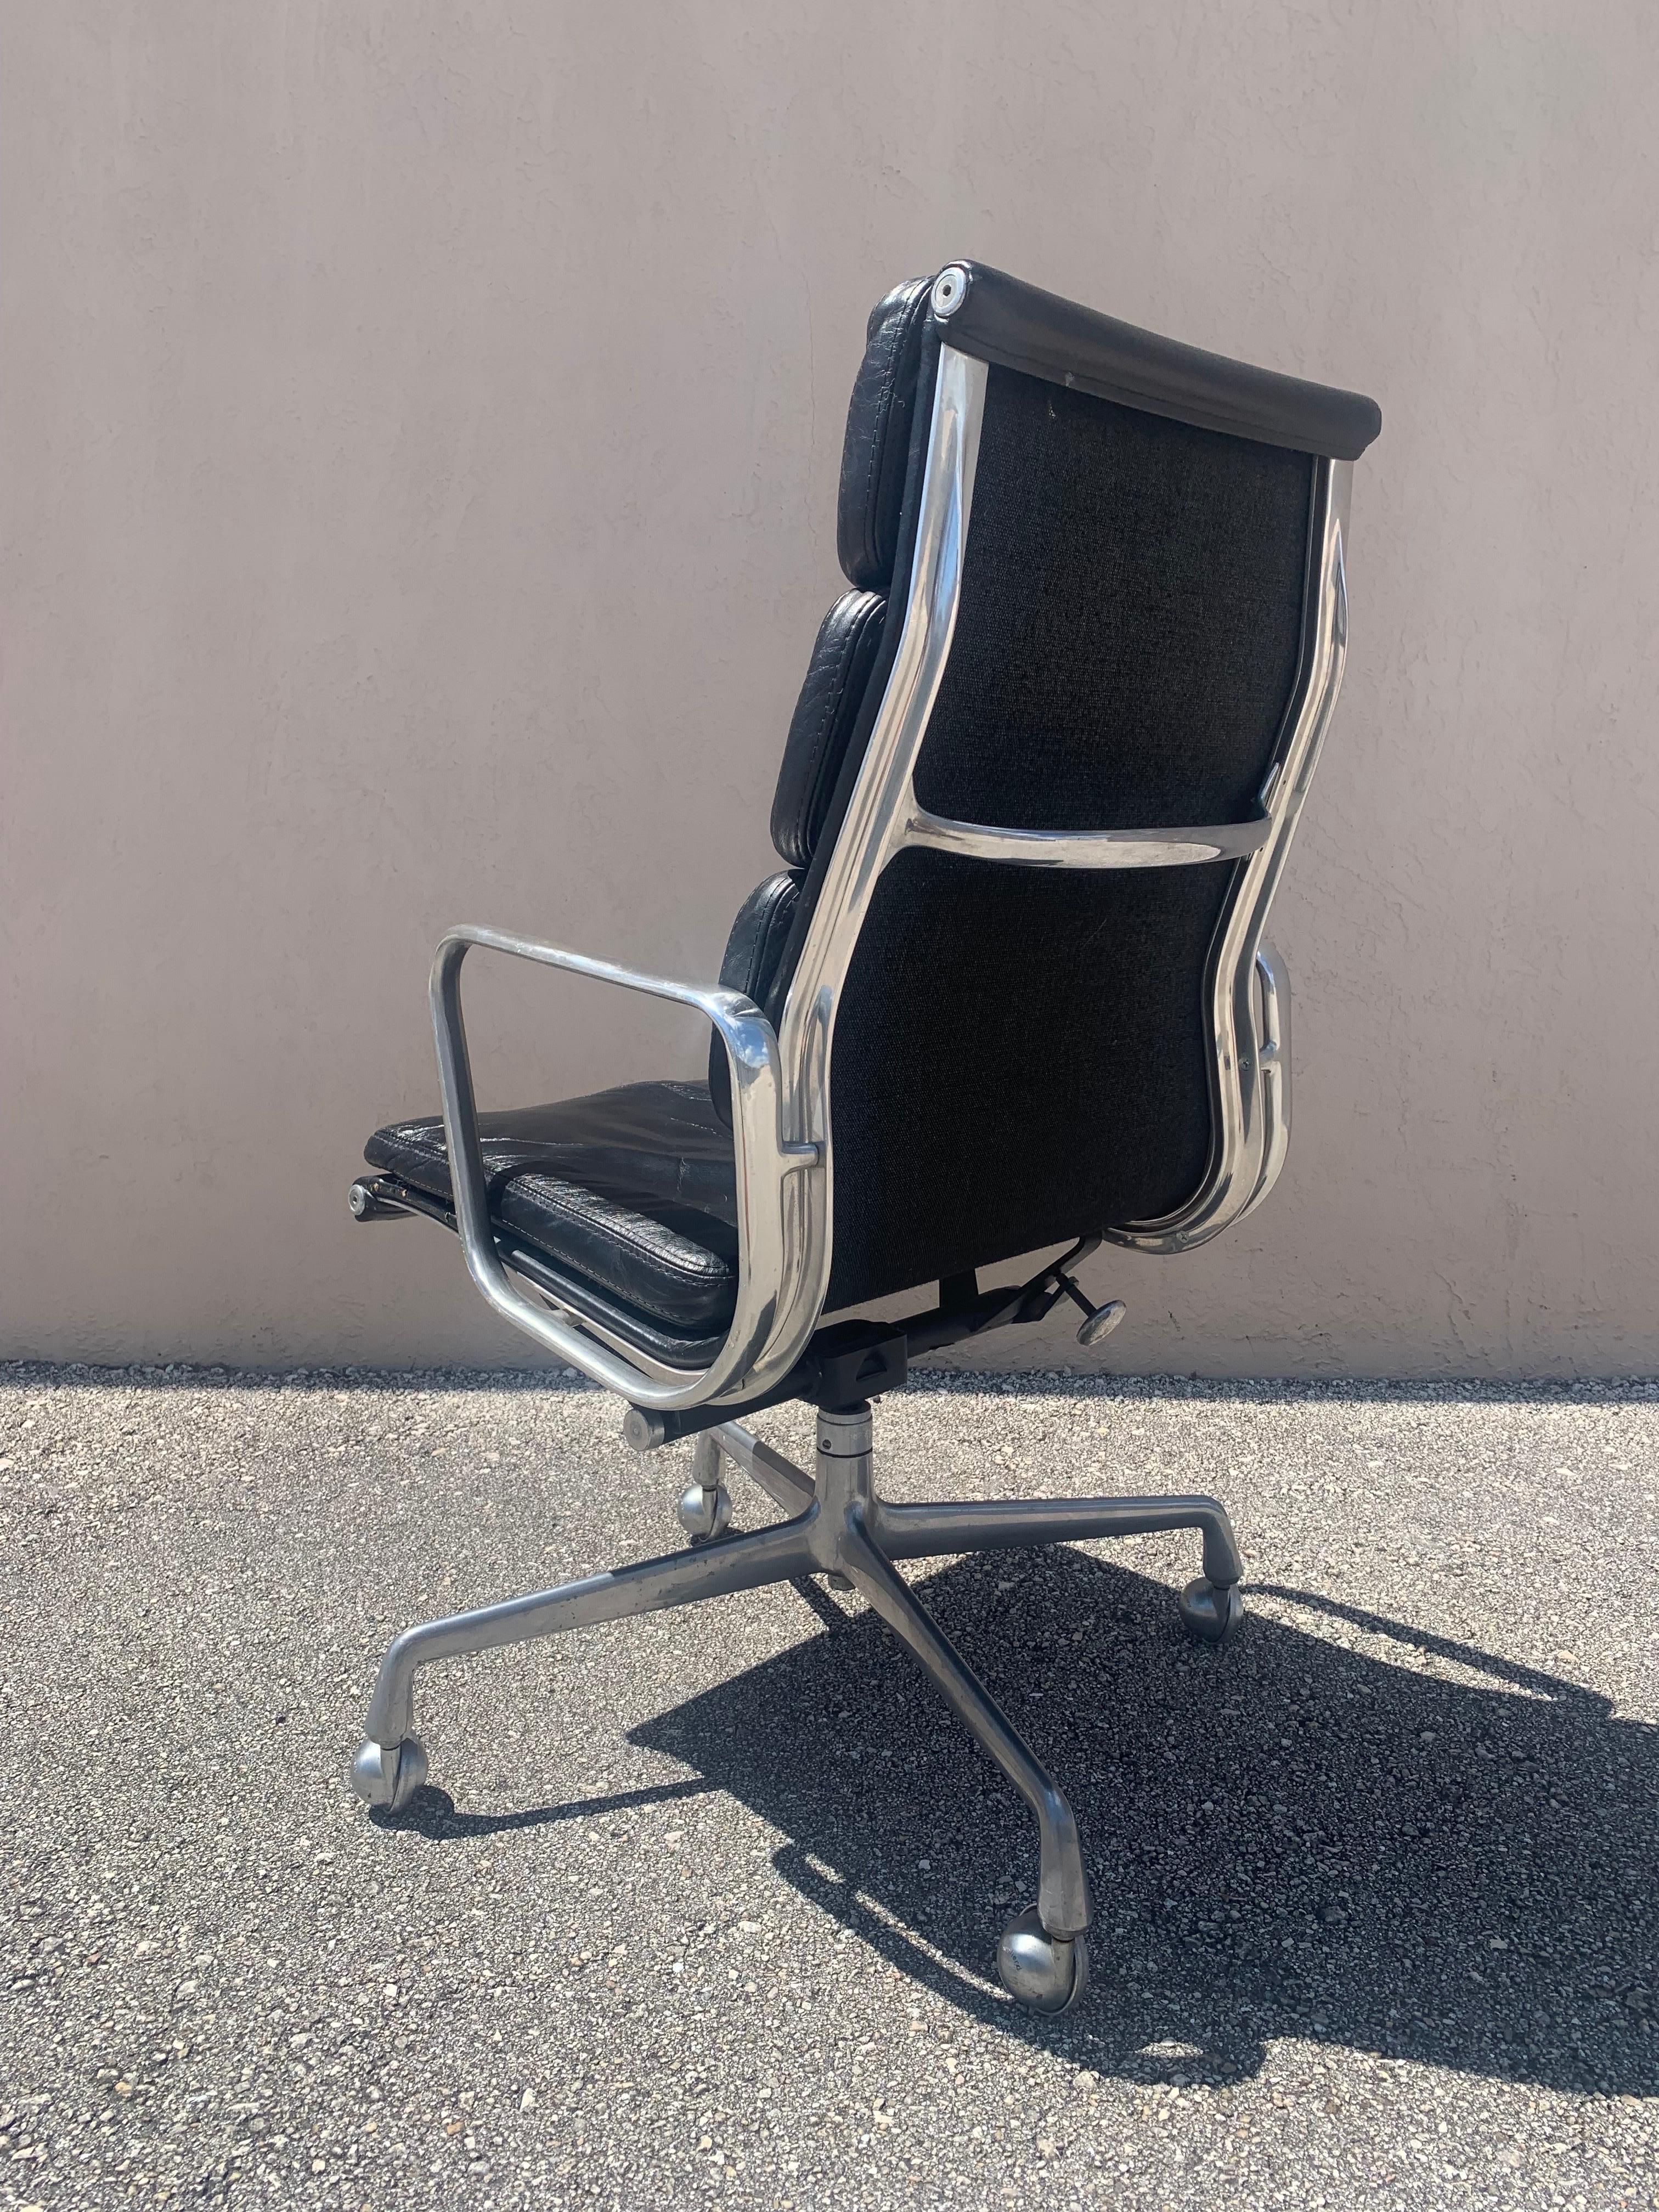 Siège de direction original à rembourrage souple conçu par Charles et Ray Eames en 1969 pour Herman Miller. Réputée pour être l'une des chaises de bureau les plus confortables jamais fabriquées, cette chaise ne fait pas exception à la règle. L'un